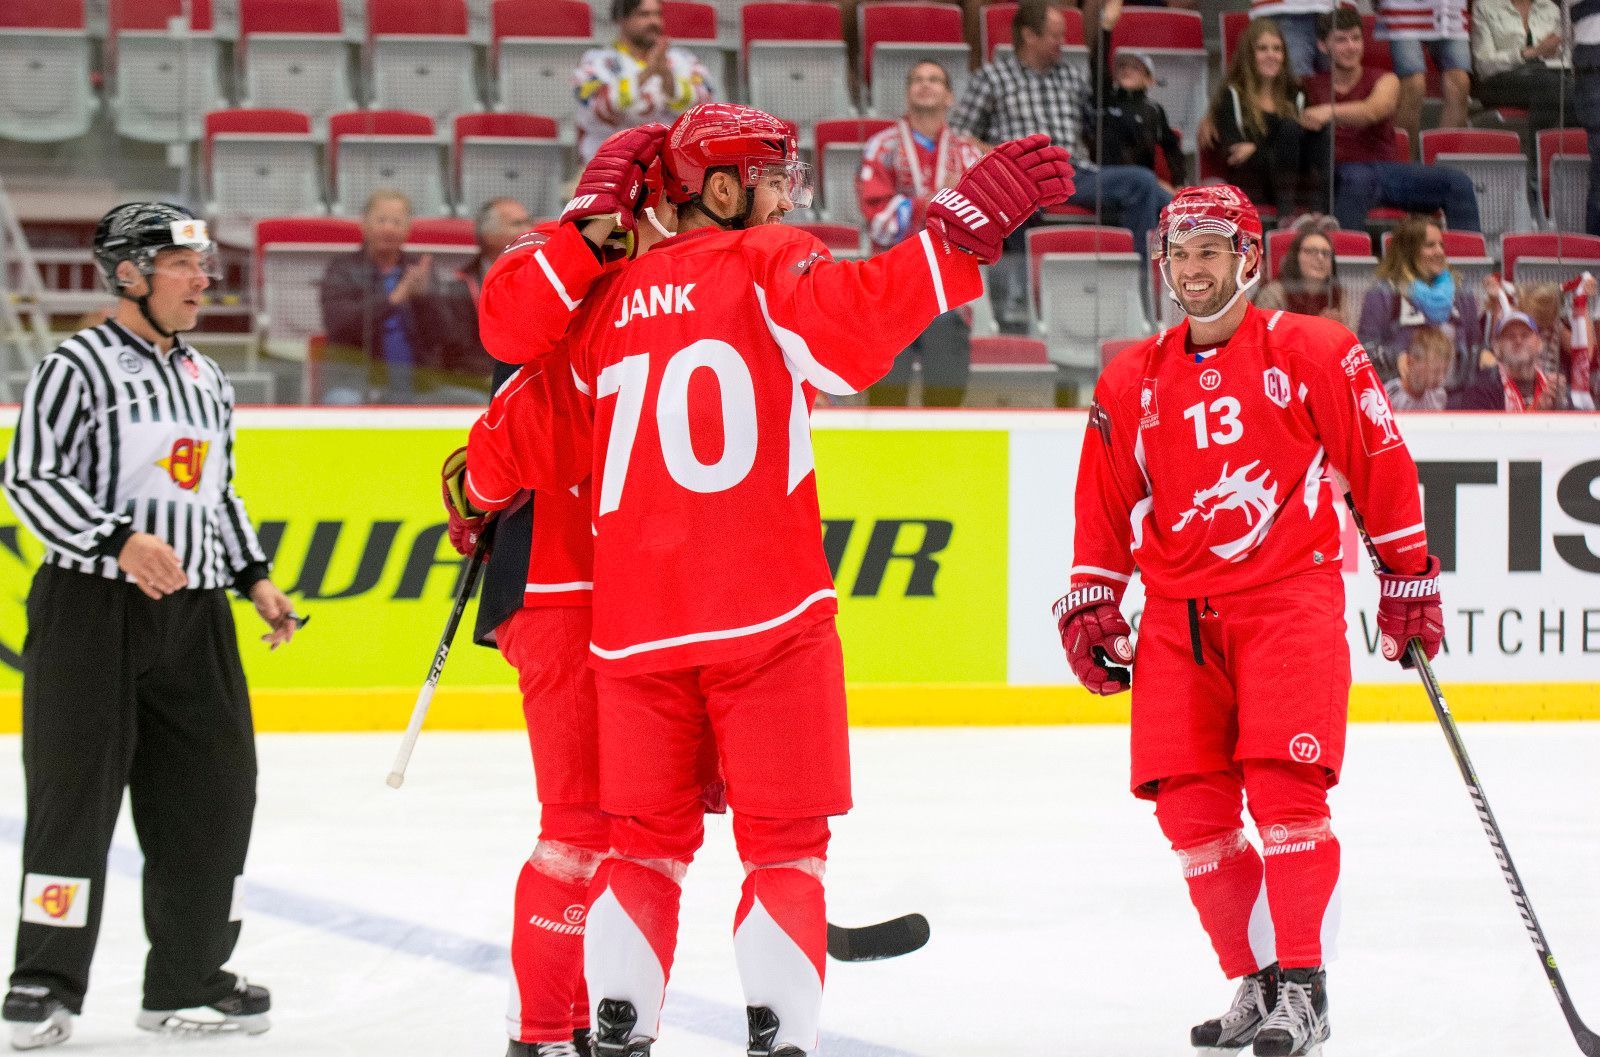 Hokejová CHL 2017/18: Třinec - Esbjerg 9:1